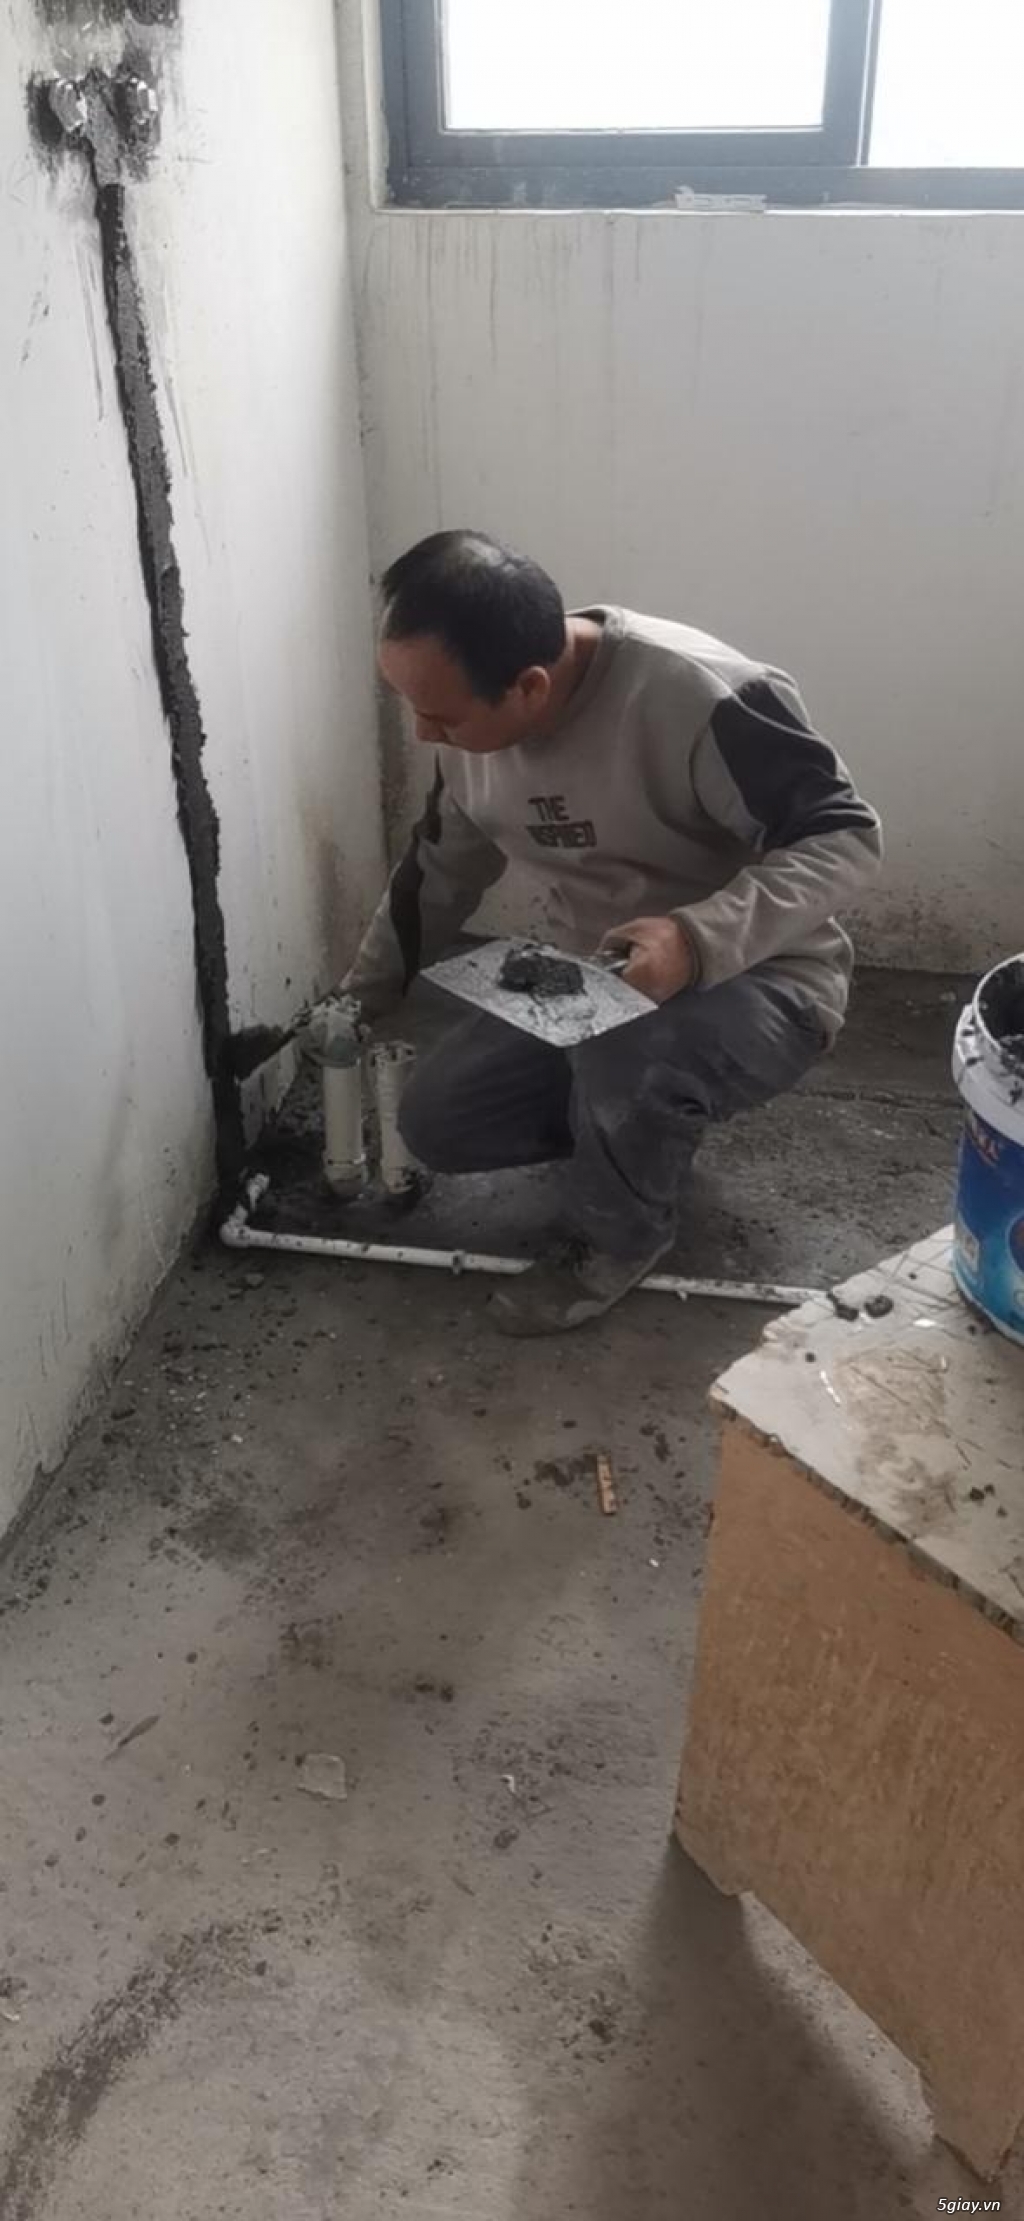 Nhận sơn sửa nhà uy tín chuyên nghiệp tại Hà Nội - 0983533319